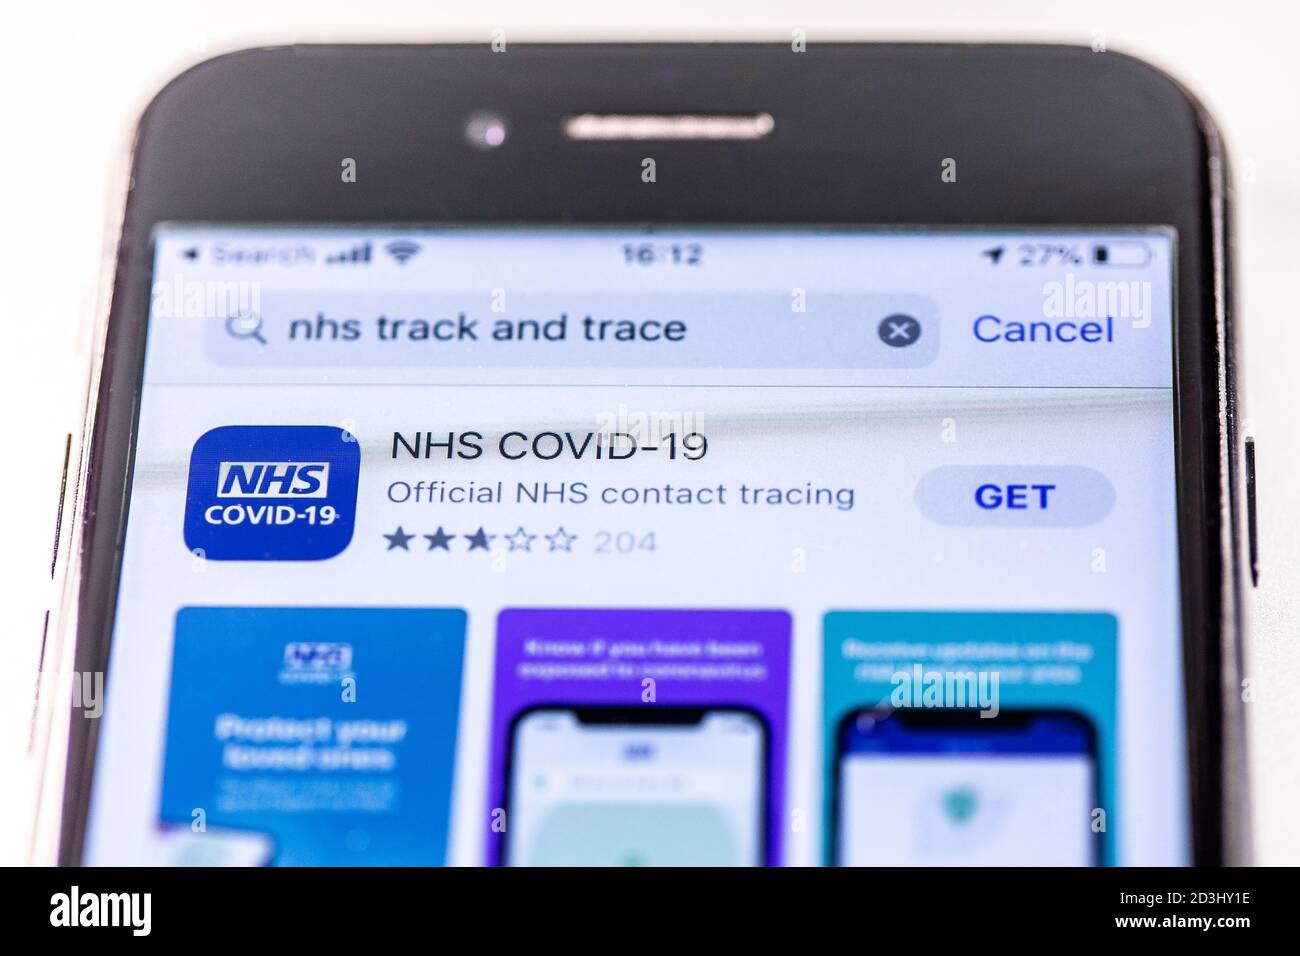 Die offizielle Kontaktverfolgungs-App von NHS Covid-19 steht im Apple App Store zum Download bereit und wird auf einem iPhone-Display angezeigt. Stockfoto